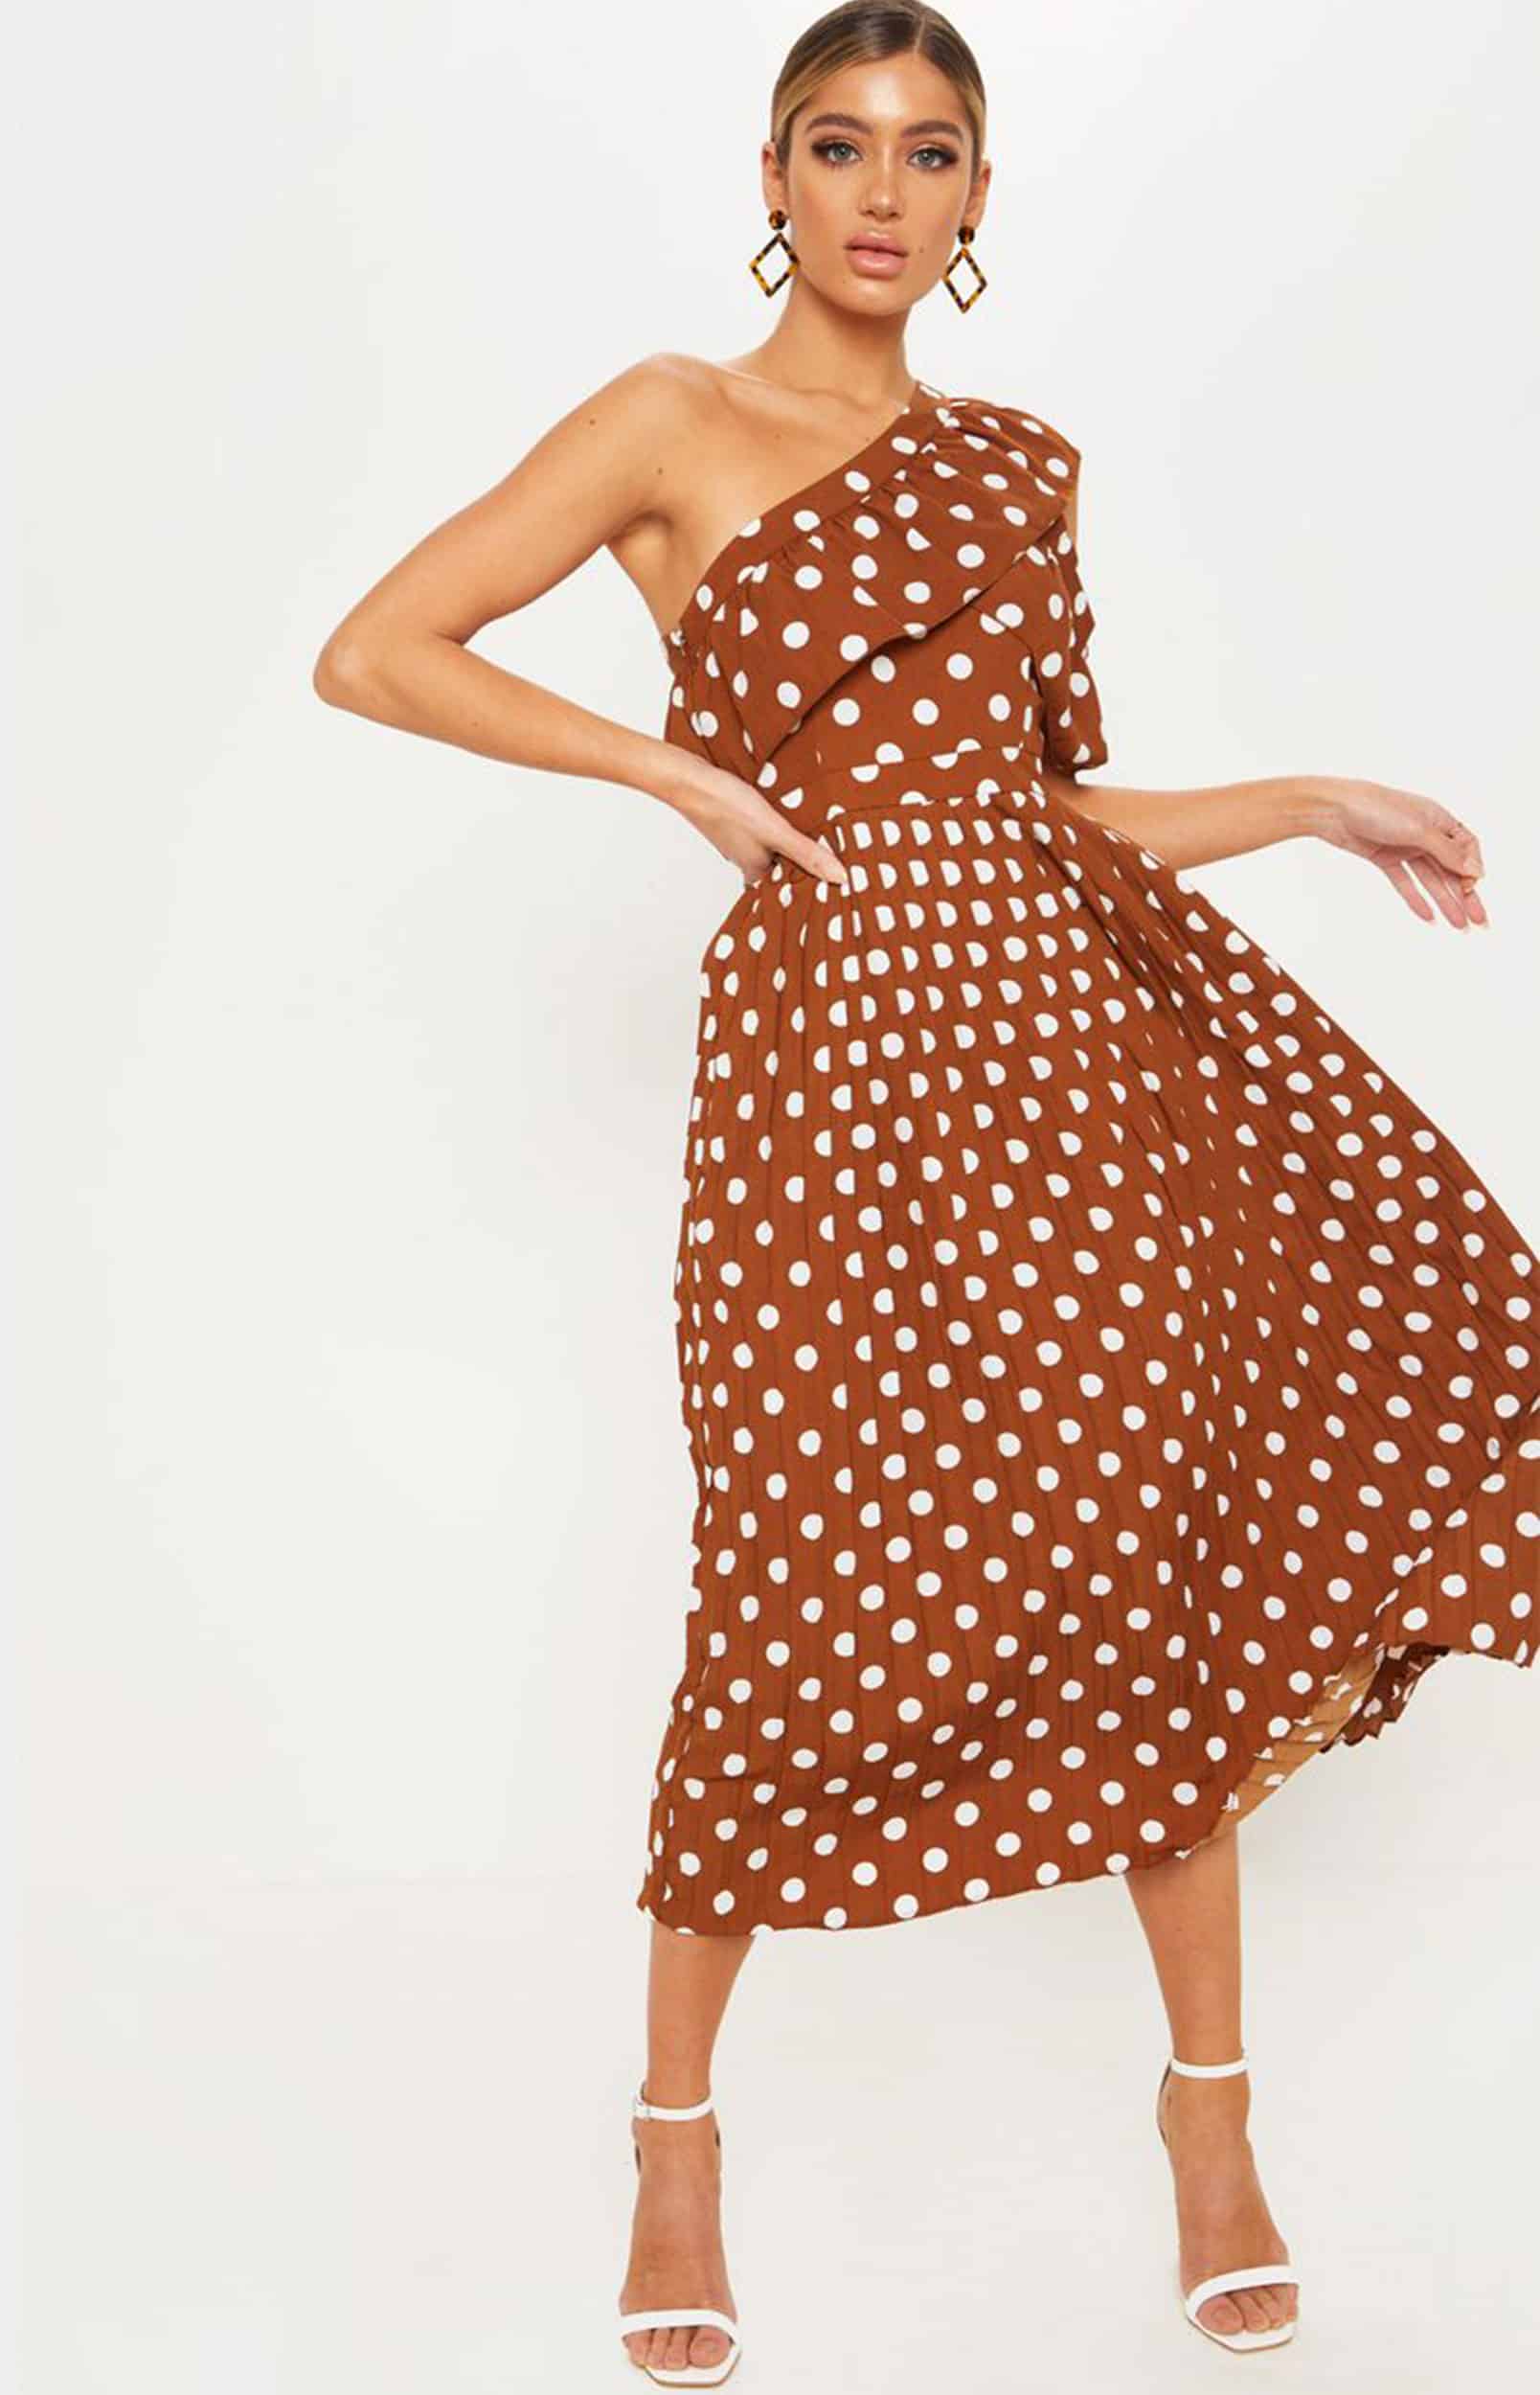 Iznajmljivanje haljina Nis - UK With Love - Rent A Dress Nis